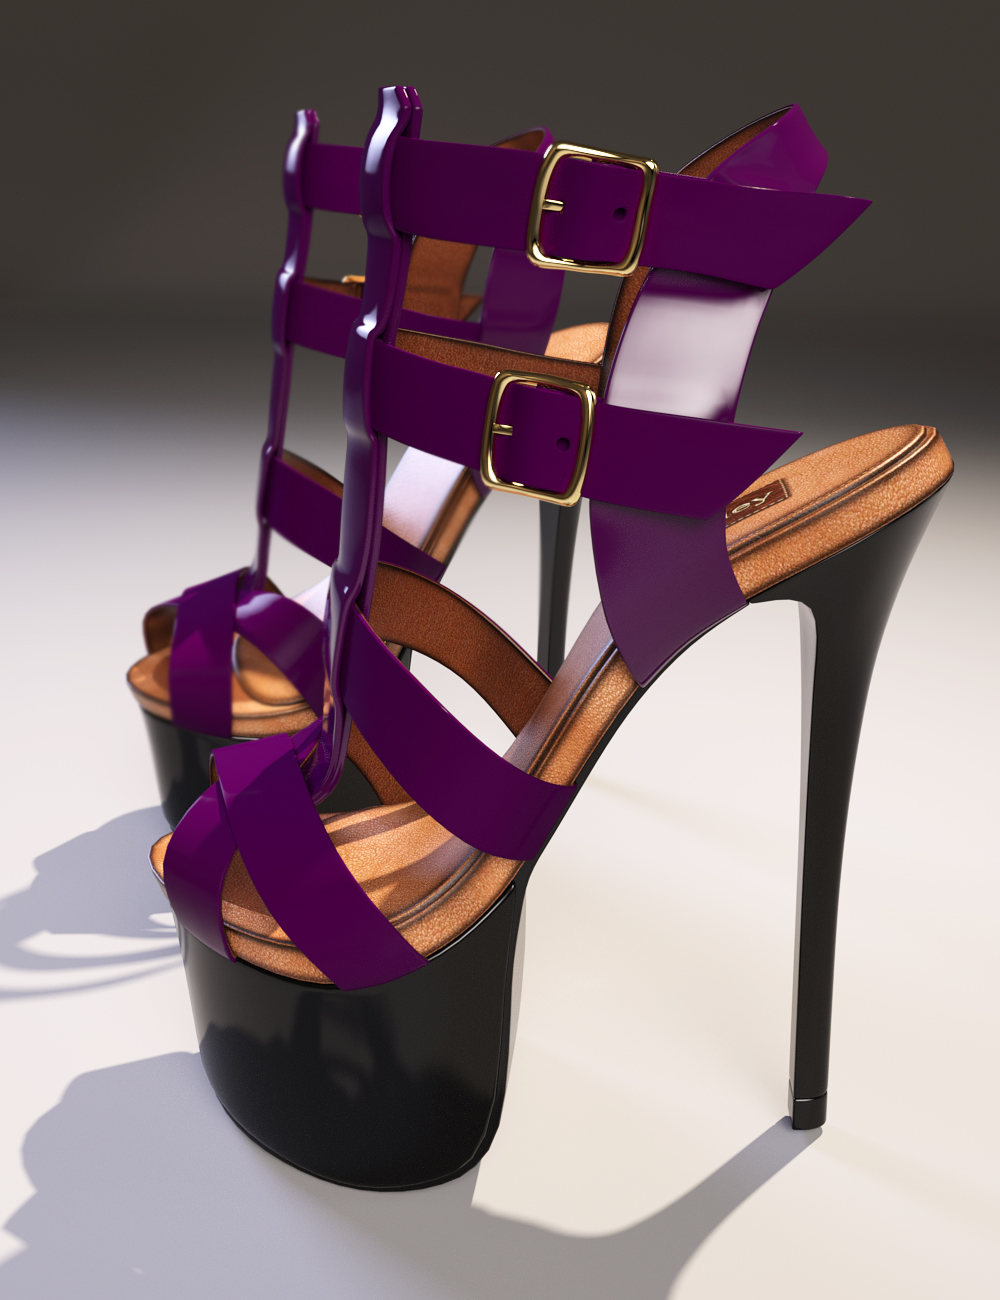 Ashley High Heels Genesis 3 Female(s) by: 3DSublimeProductionsoutoftouchArryn, 3D Models by Daz 3D